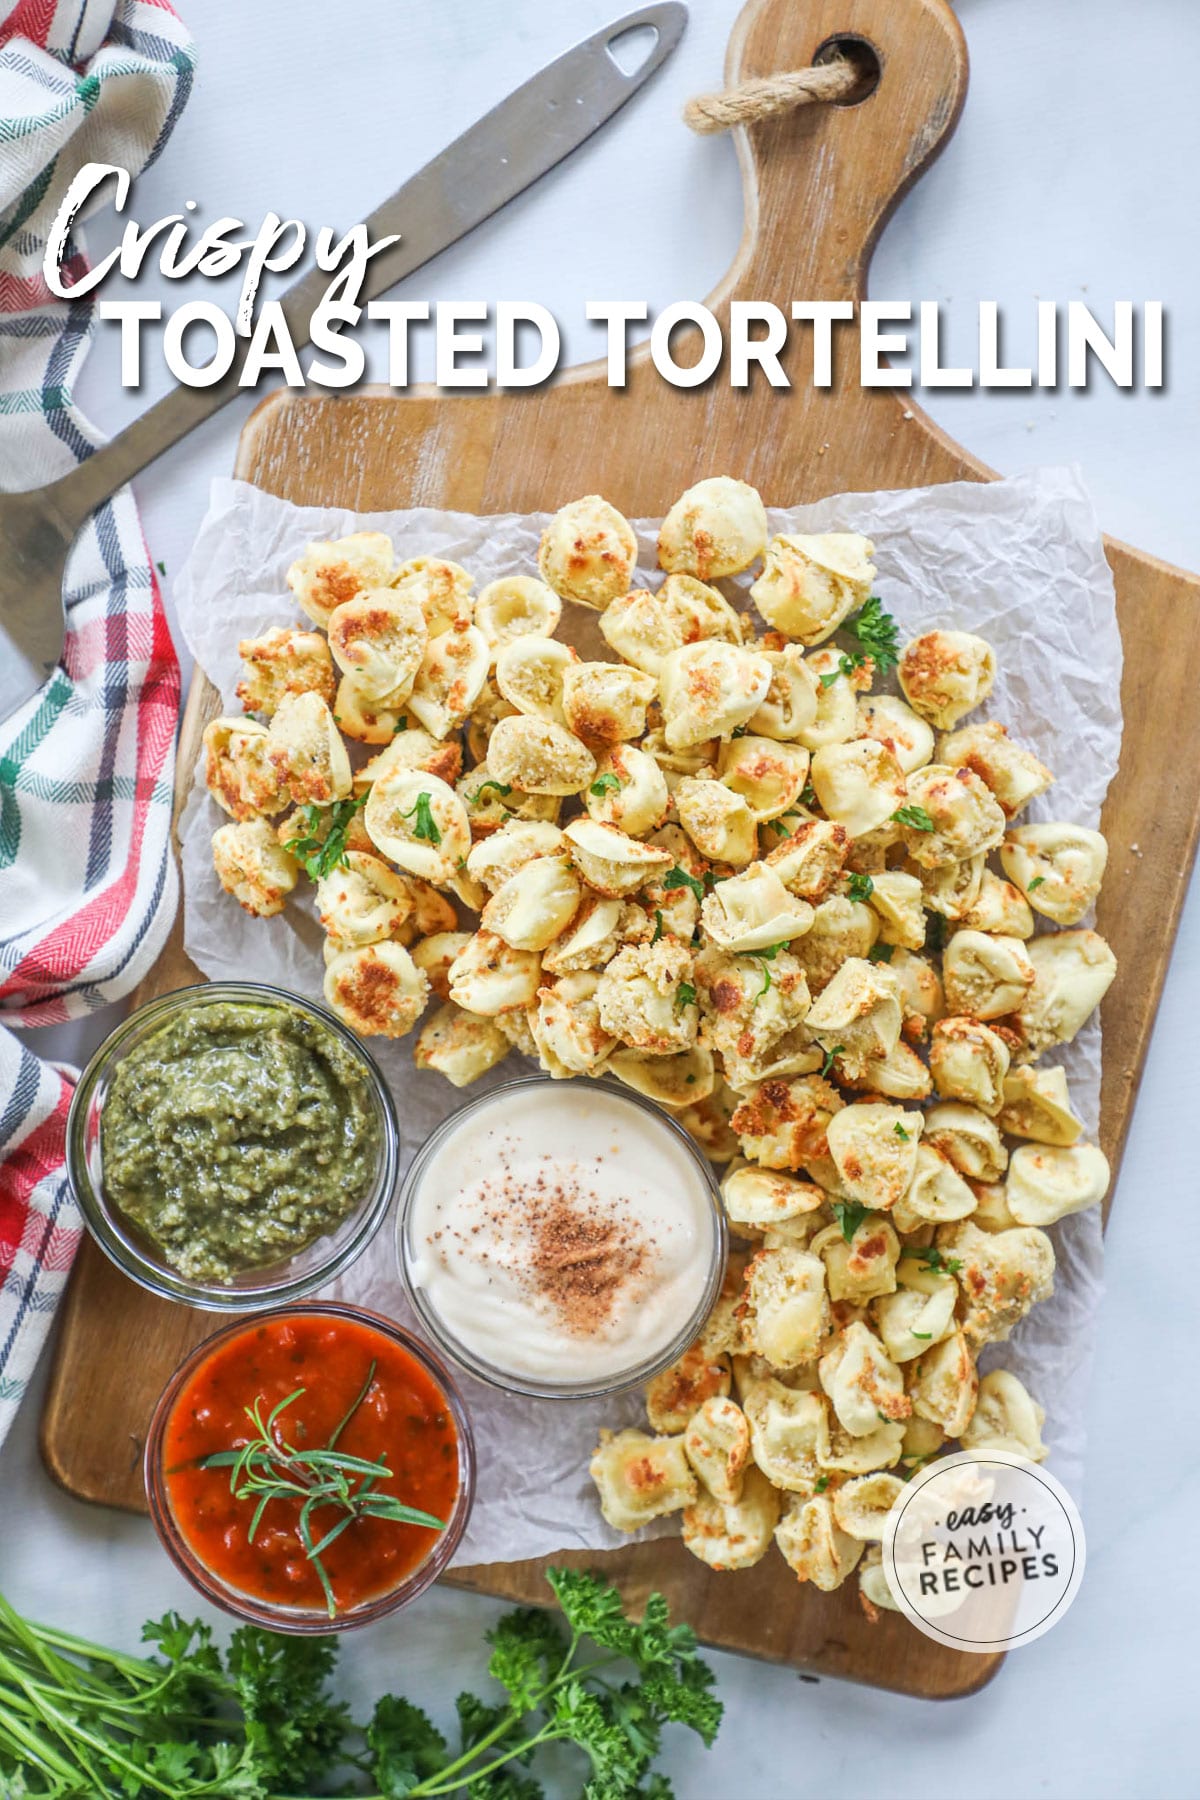 Toasted Tortellini with marinara sauce